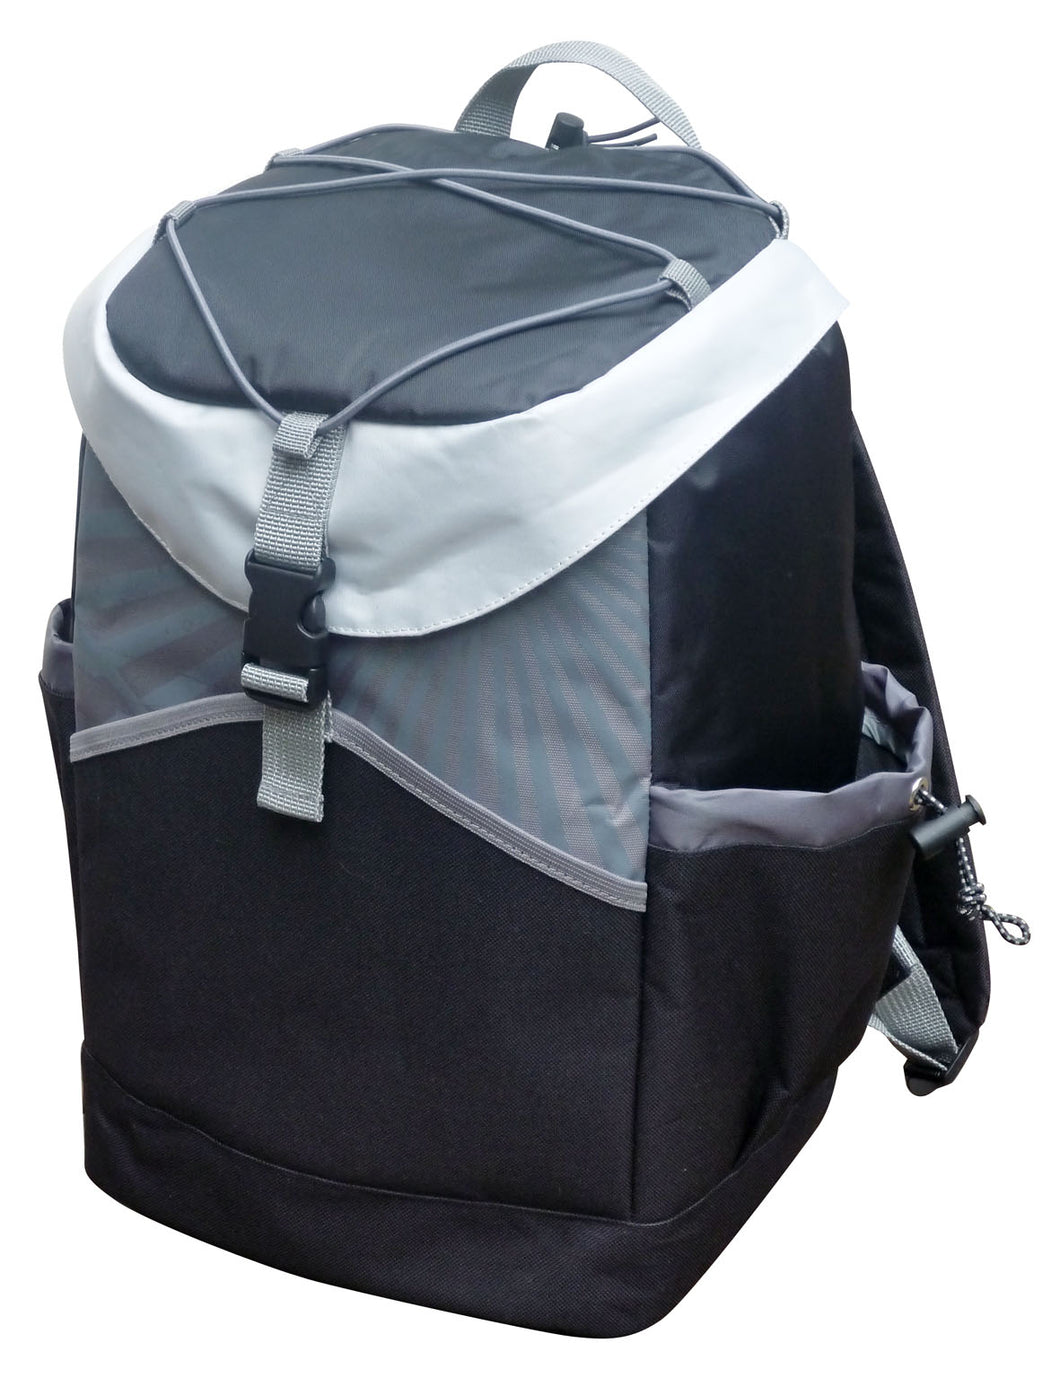 Sunrise Cooler Backpack